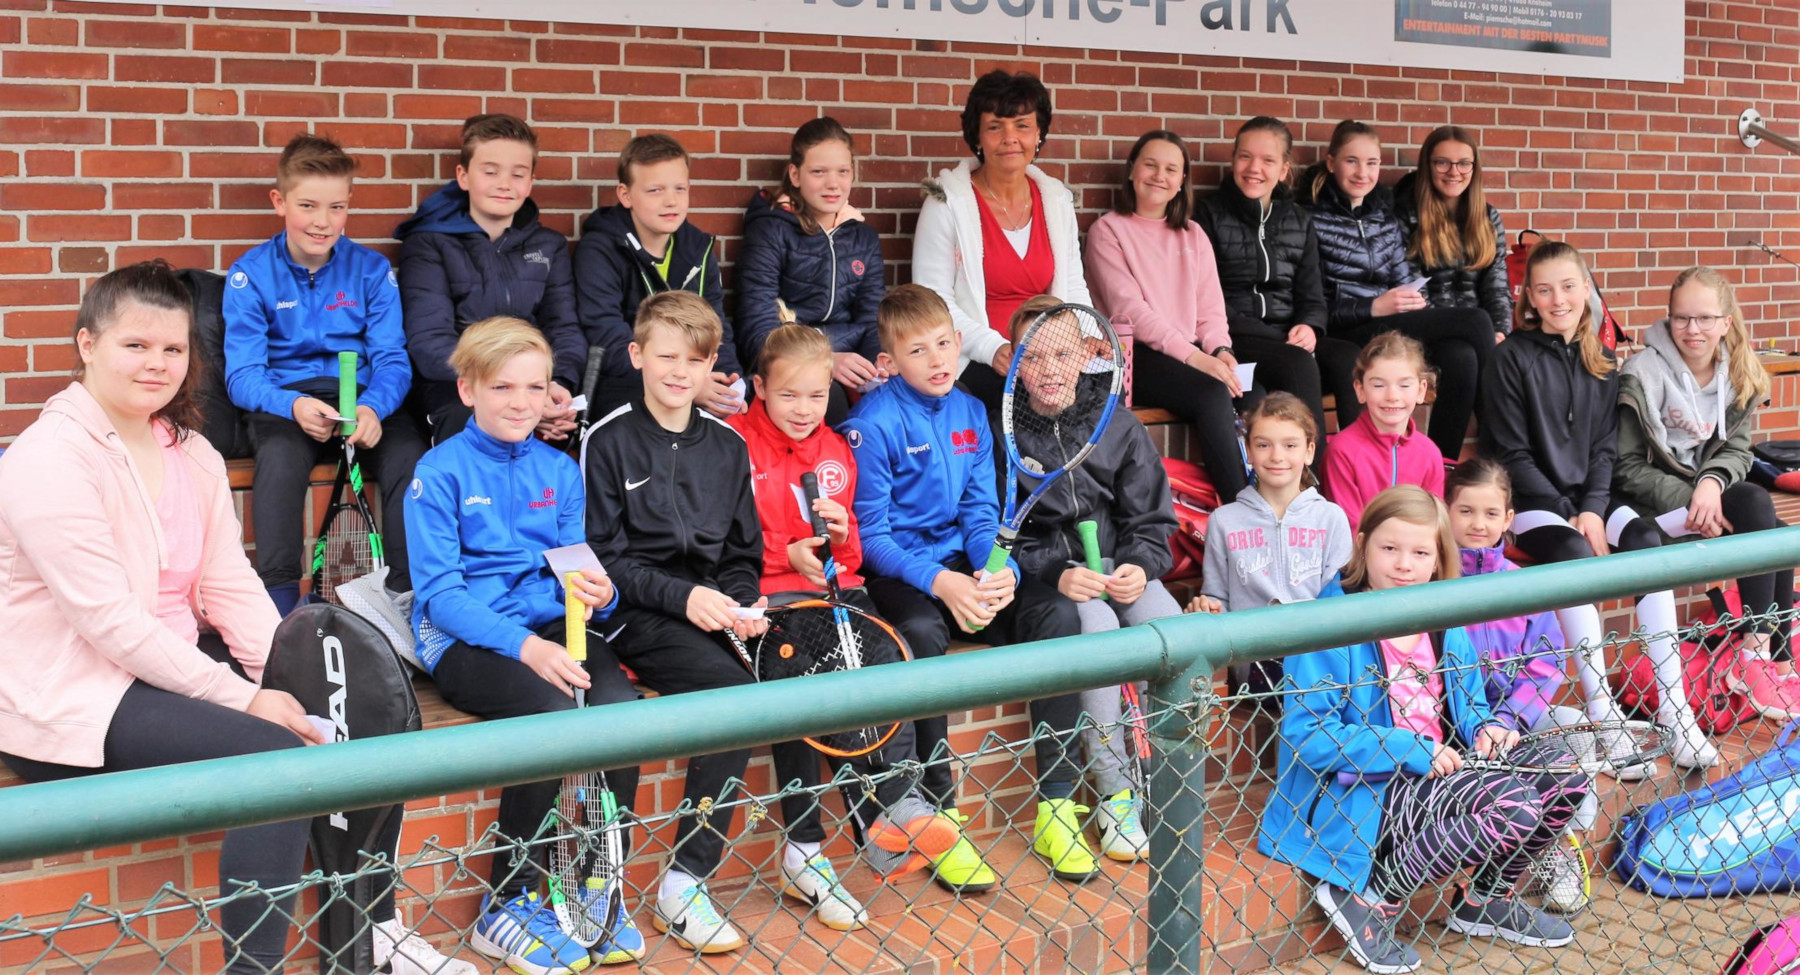 Jugendwartin Heike Bergs zusammmen mit den Teilnehmern der Jugendvereinsmeisterschaften